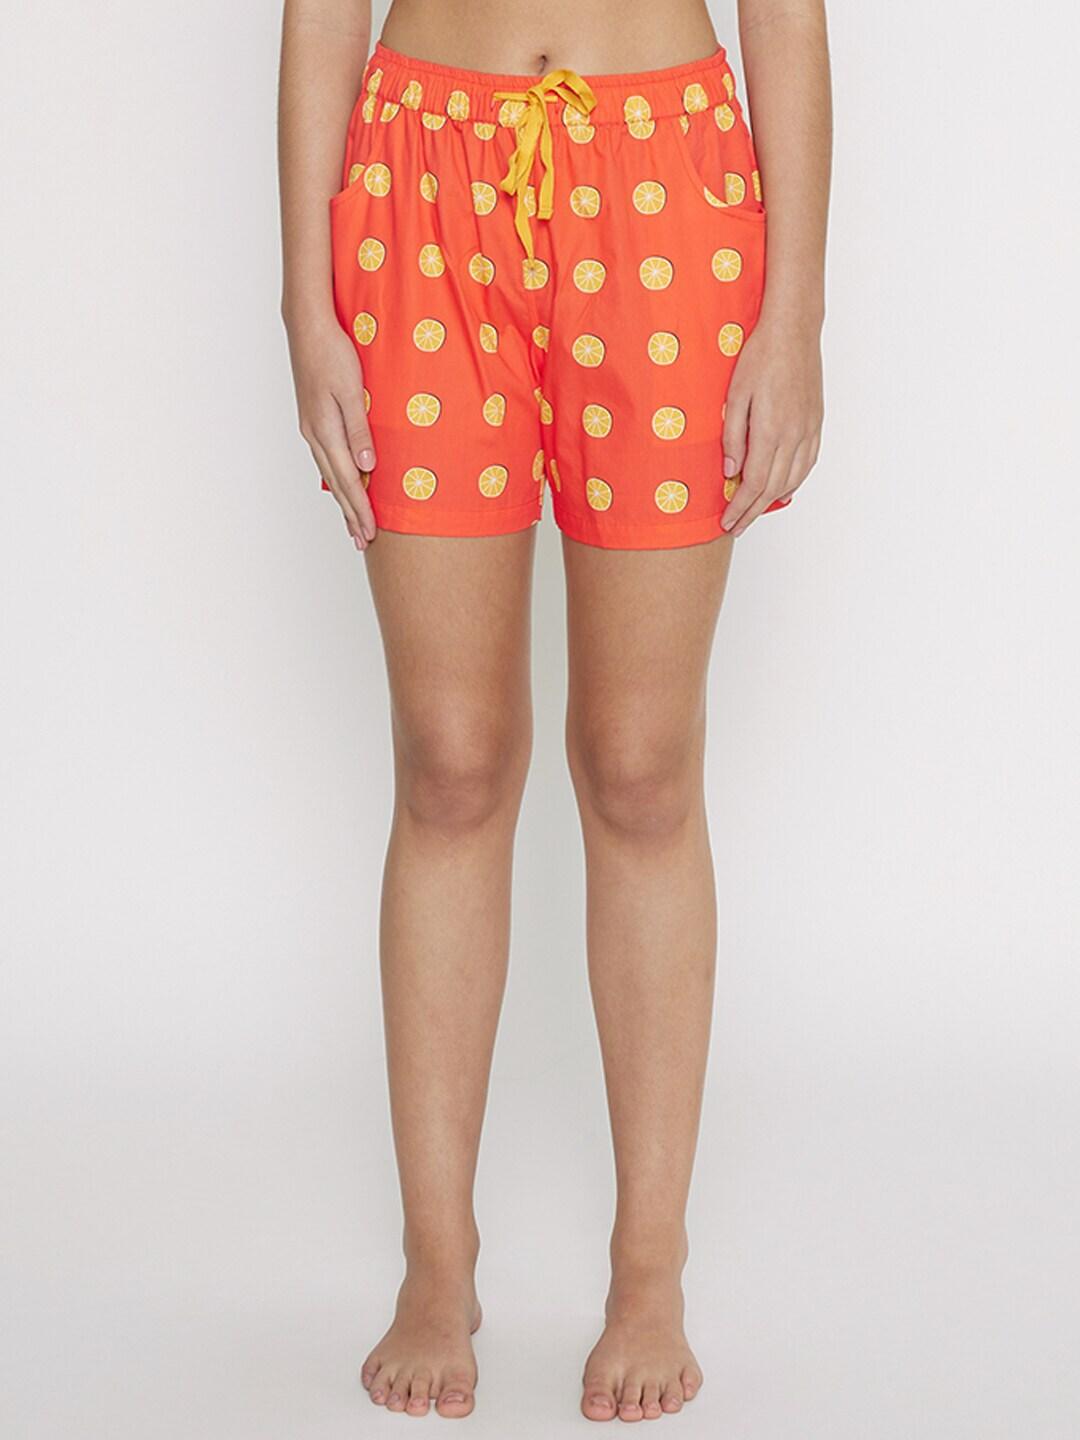 smugglerz-women-orange-&-yellow-printed-lounge-shorts